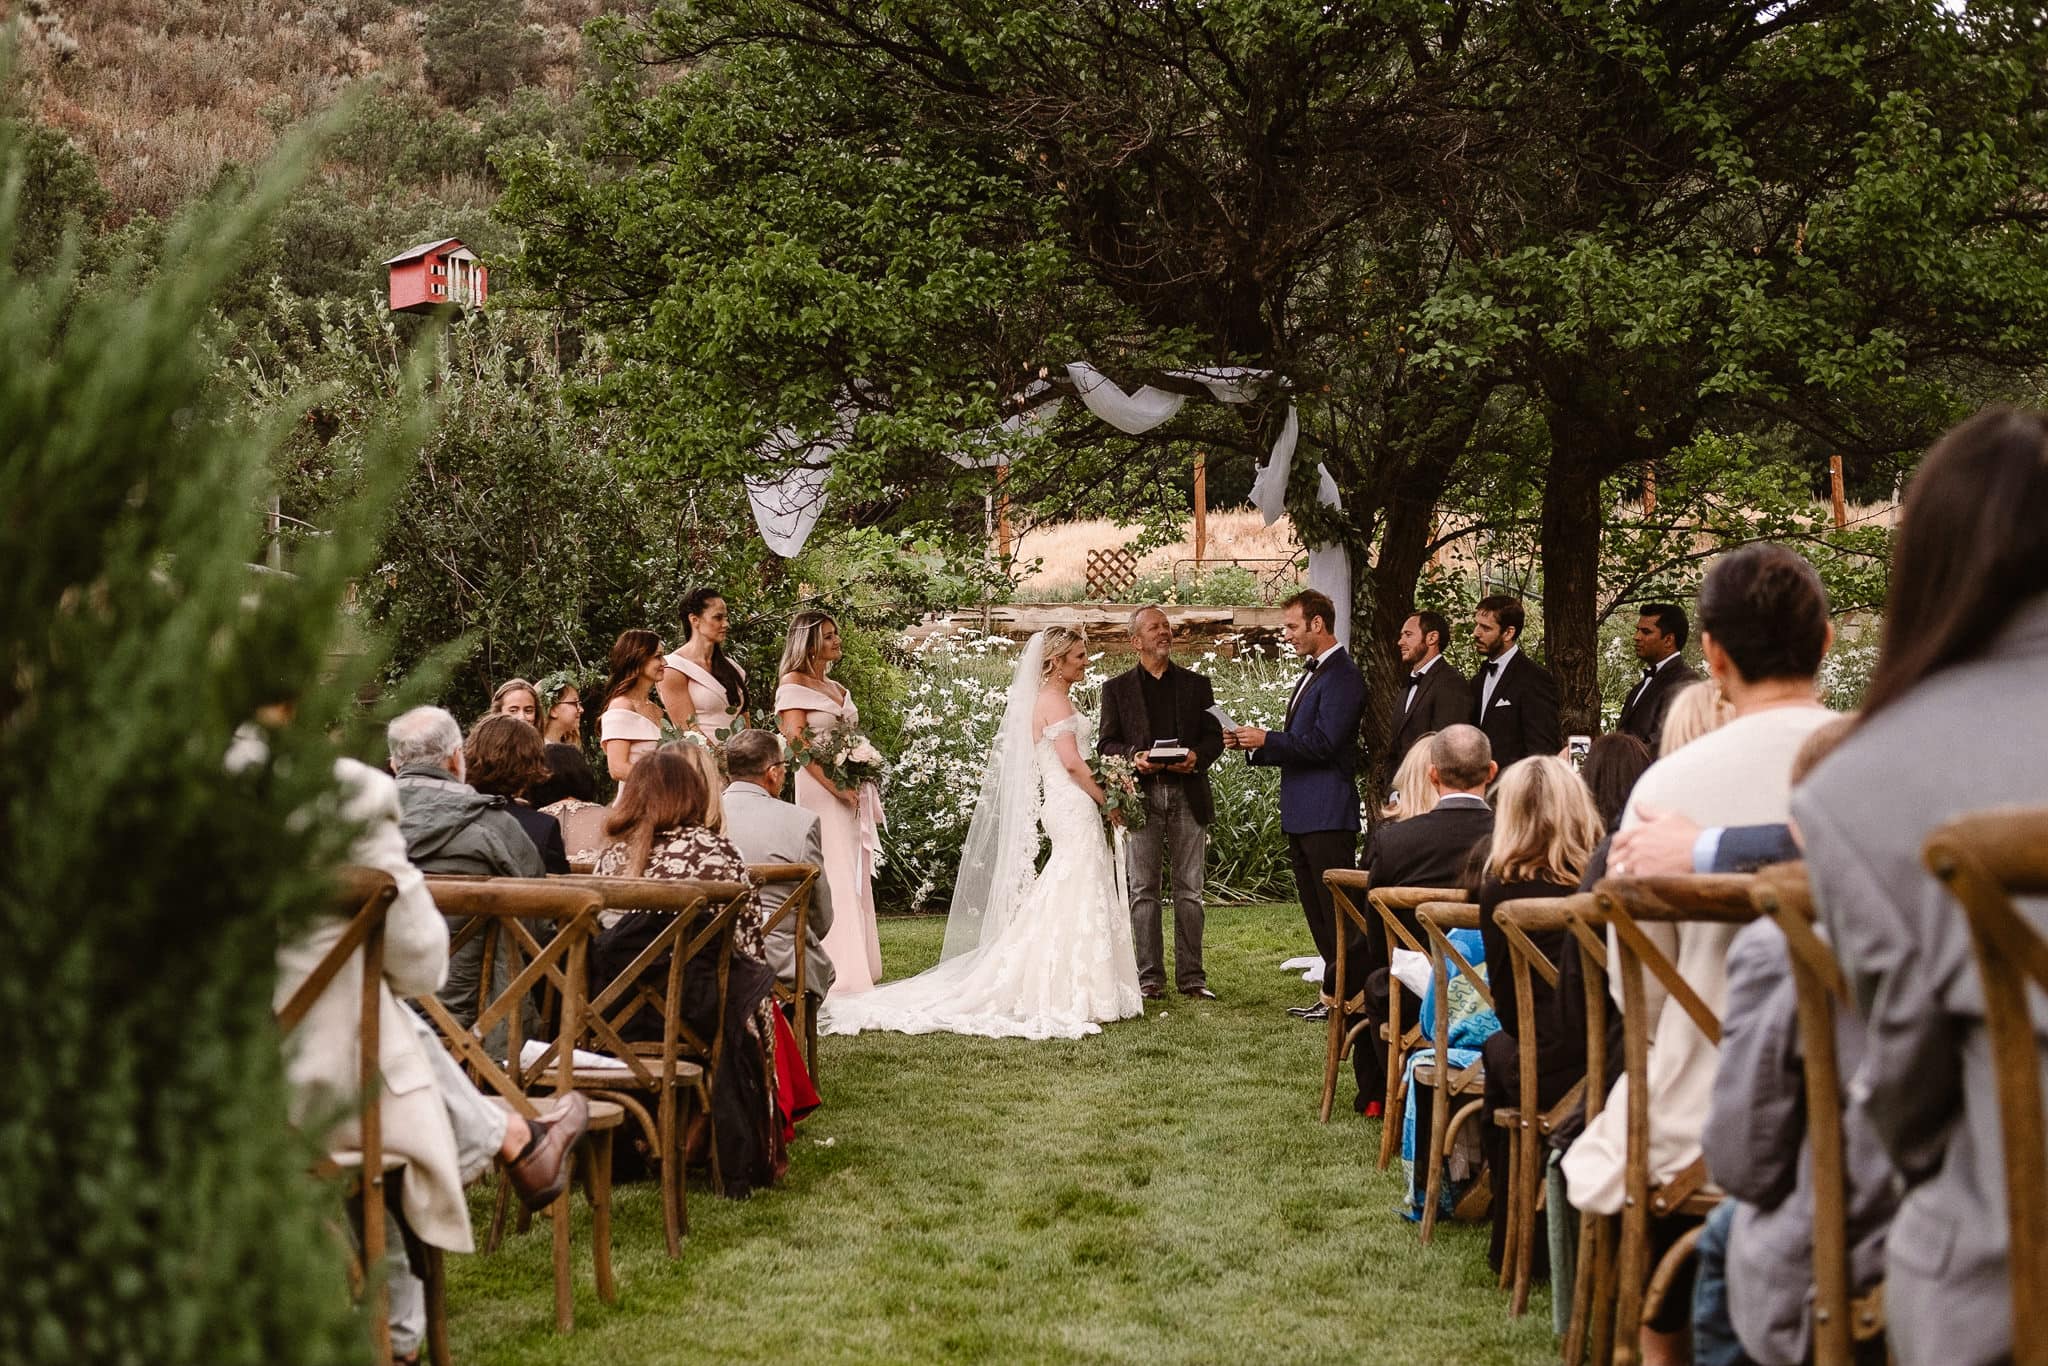 Aspen ranch wedding, Colorado mountain wedding photographer, private ranch wedding ceremony